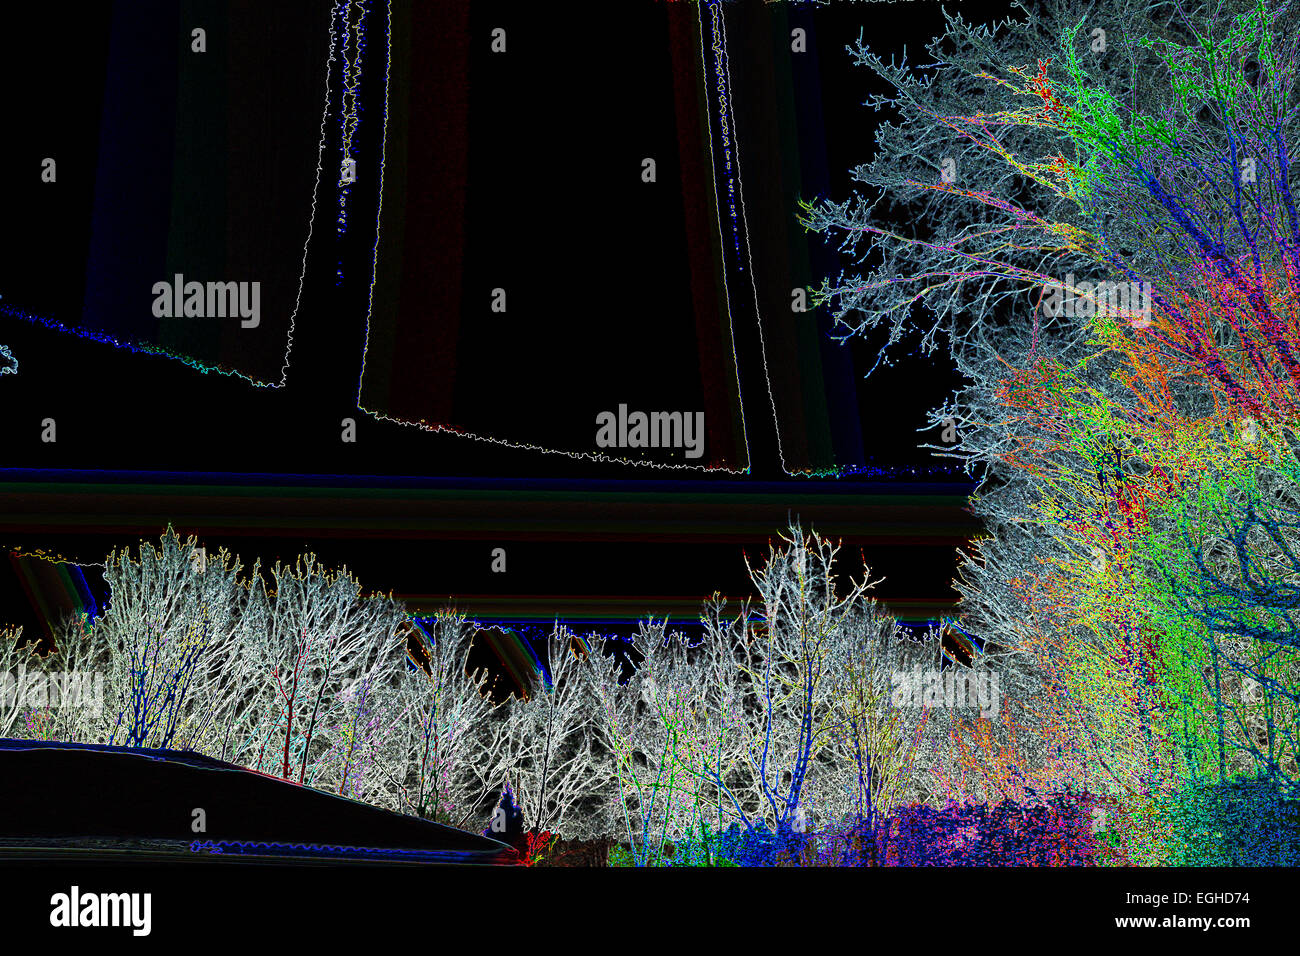 schwarze Farbe Bild digital außen vorgestellten horizontale viele Nacht Photoshopped polarisiert Bäume Baum Bäume Gebäude außen Stockfoto